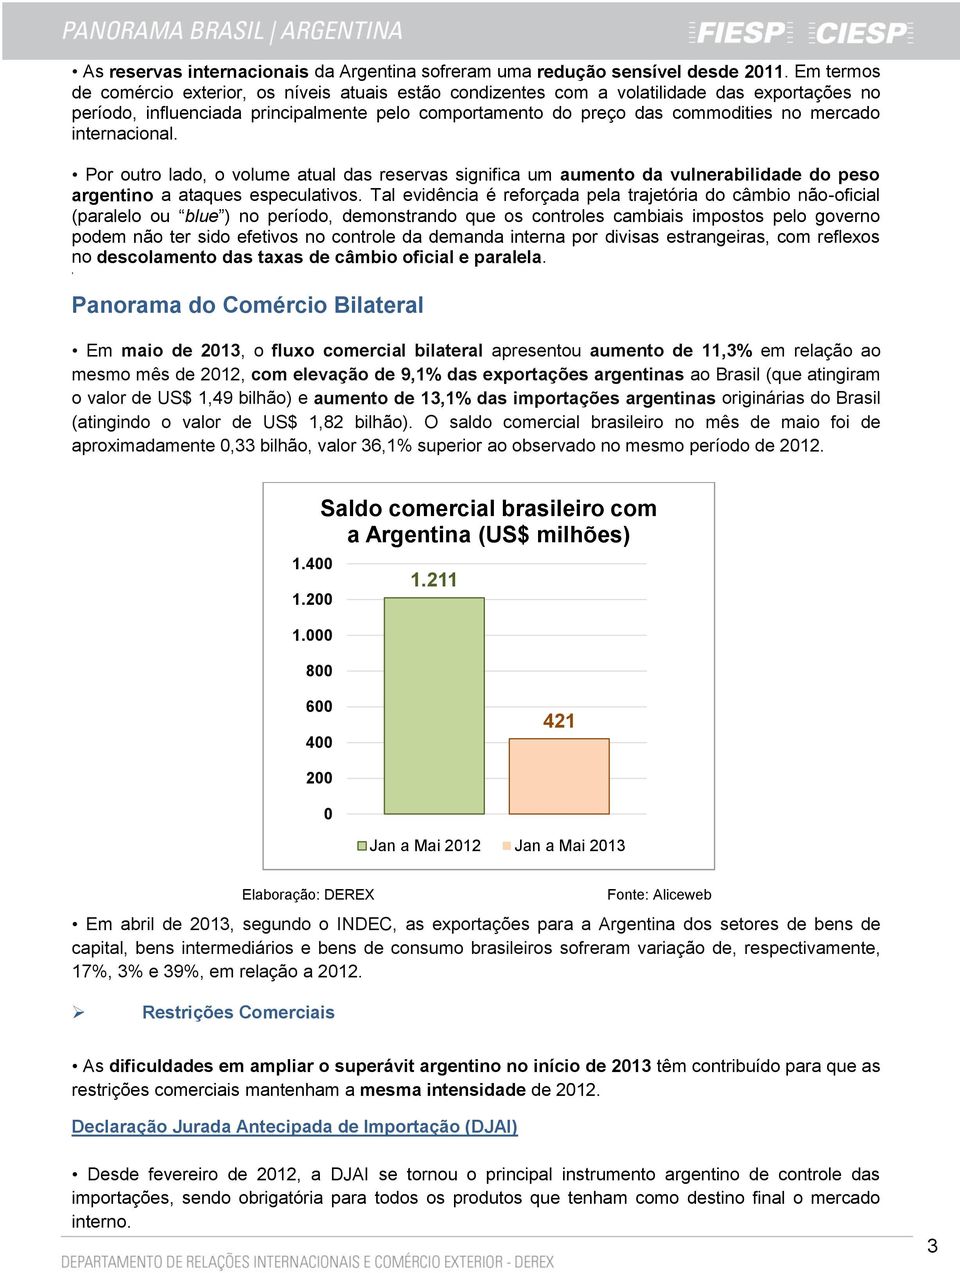 internacional. Por outro lado, o volume atual das reservas significa um aumento da vulnerabilidade do peso argentino a ataques especulativos.